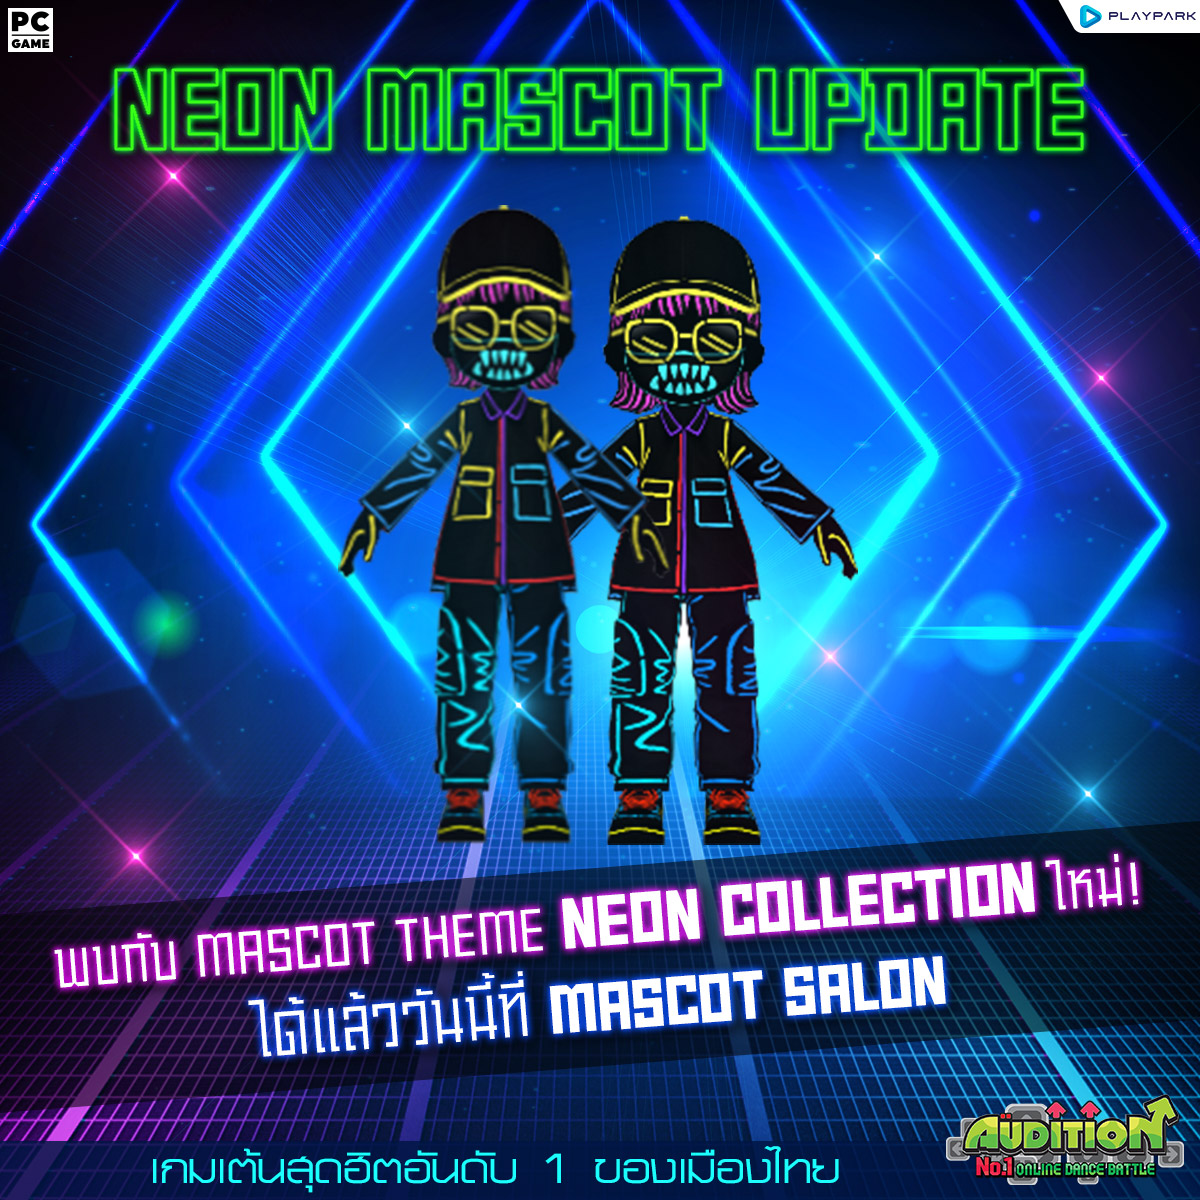 22 มีนาคมนี้ Update เพลงใหม่, New Avatar Neon Collection และไอเทมใหม่!!  